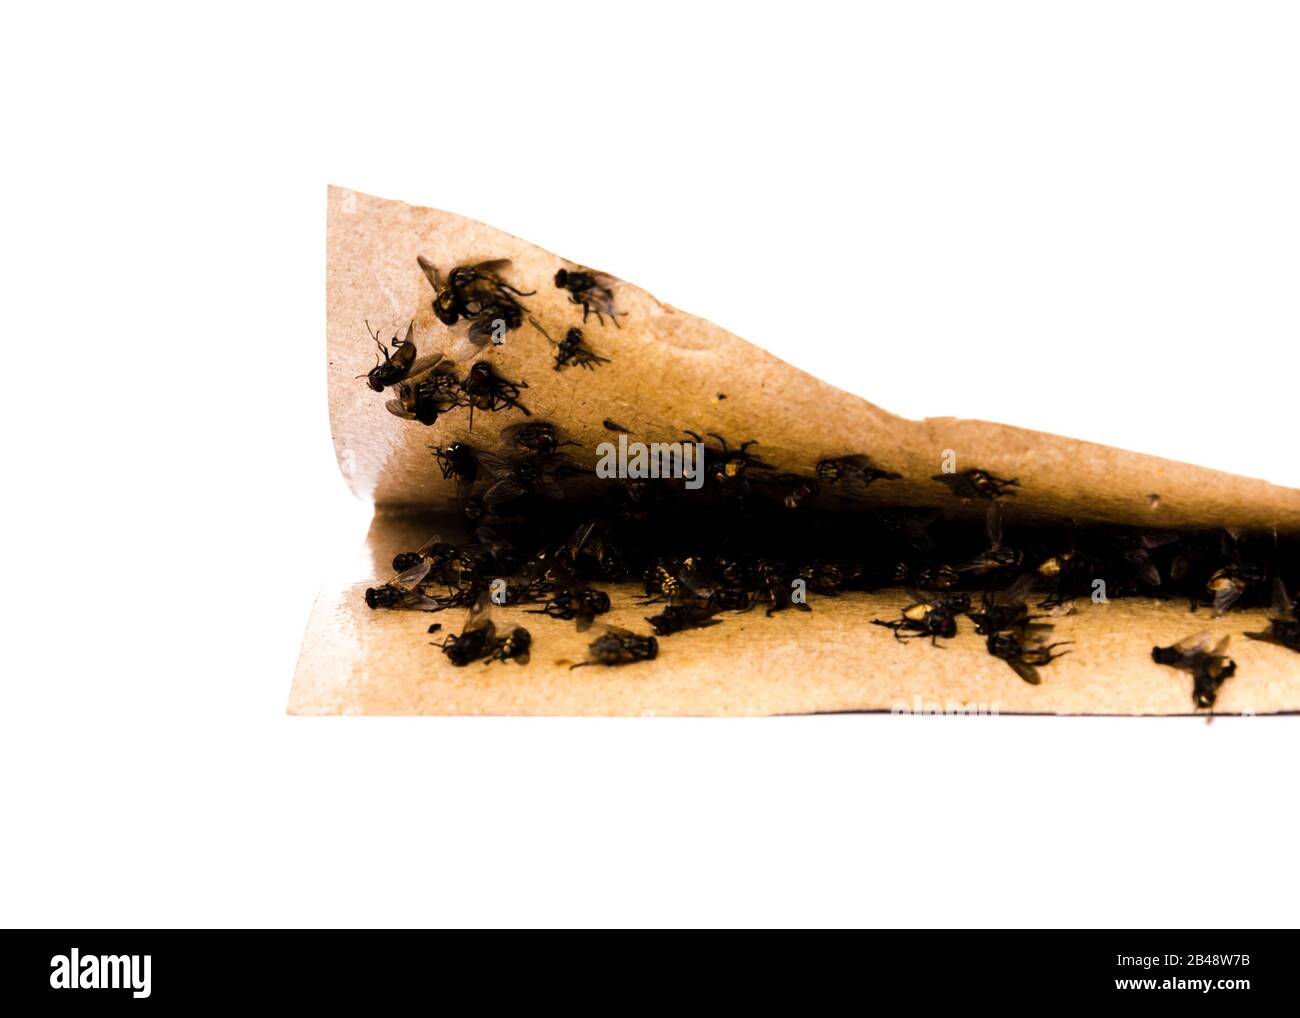 Nastro adesivo pieghevole con mosche intrappolate su una superficie estremamente appiccicosa Foto Stock